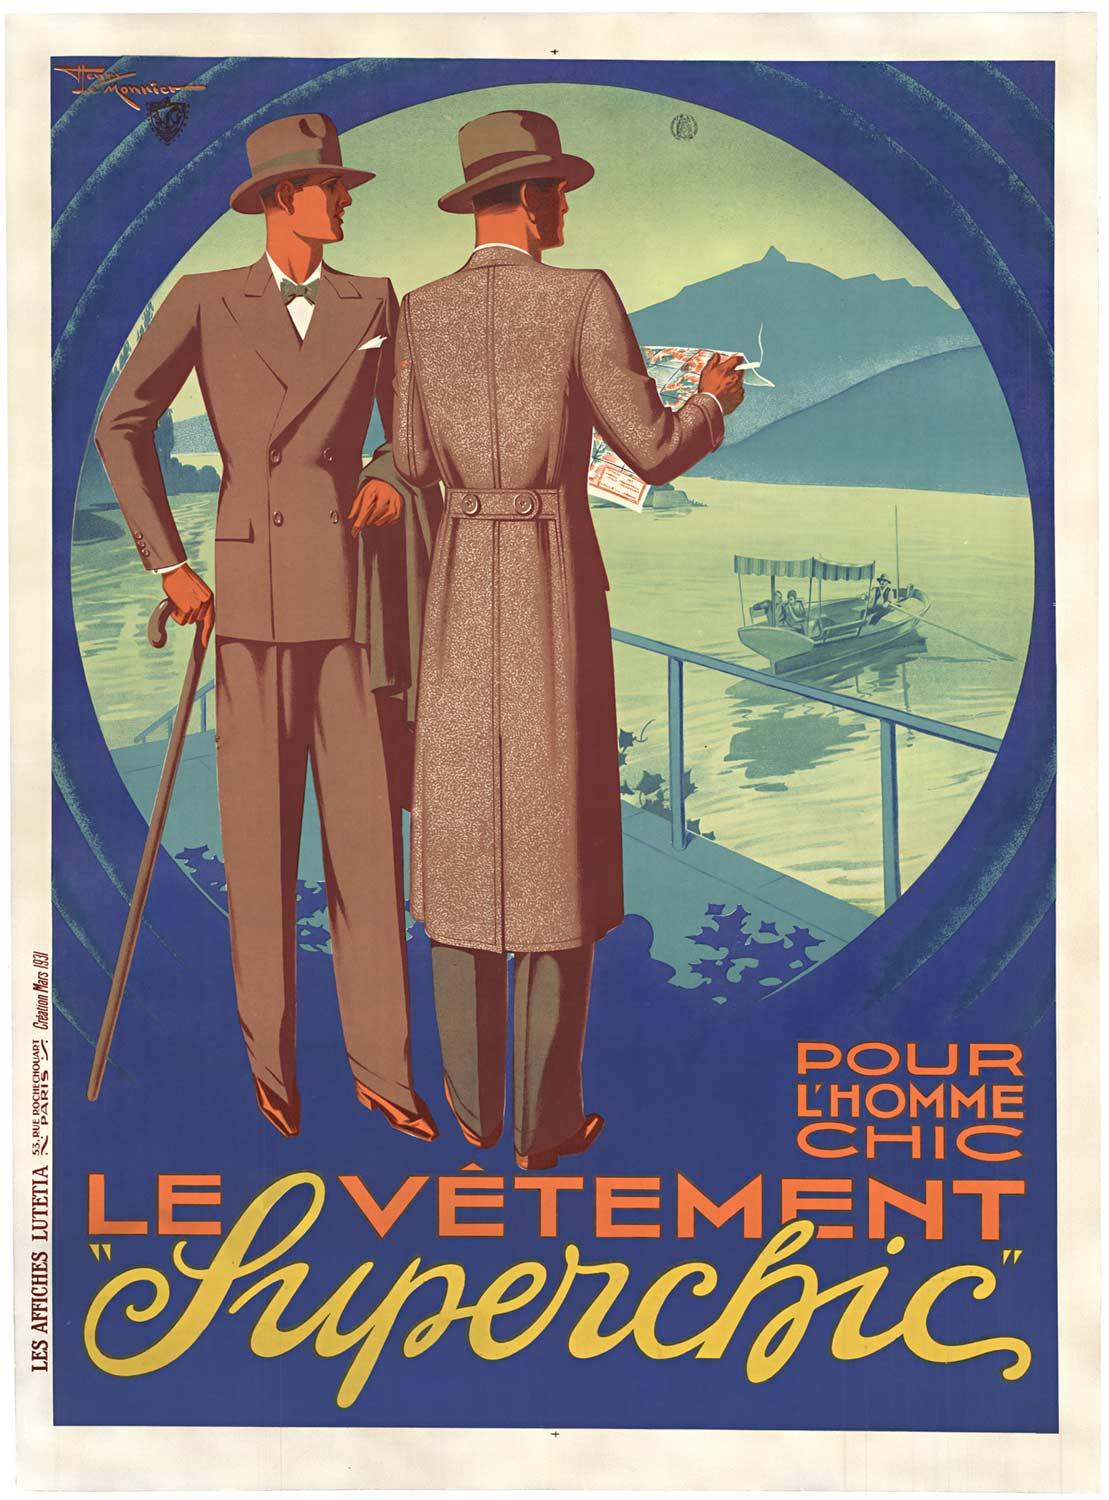 Original Le Vetement "Superchic" pour L'Homme vintage French poster